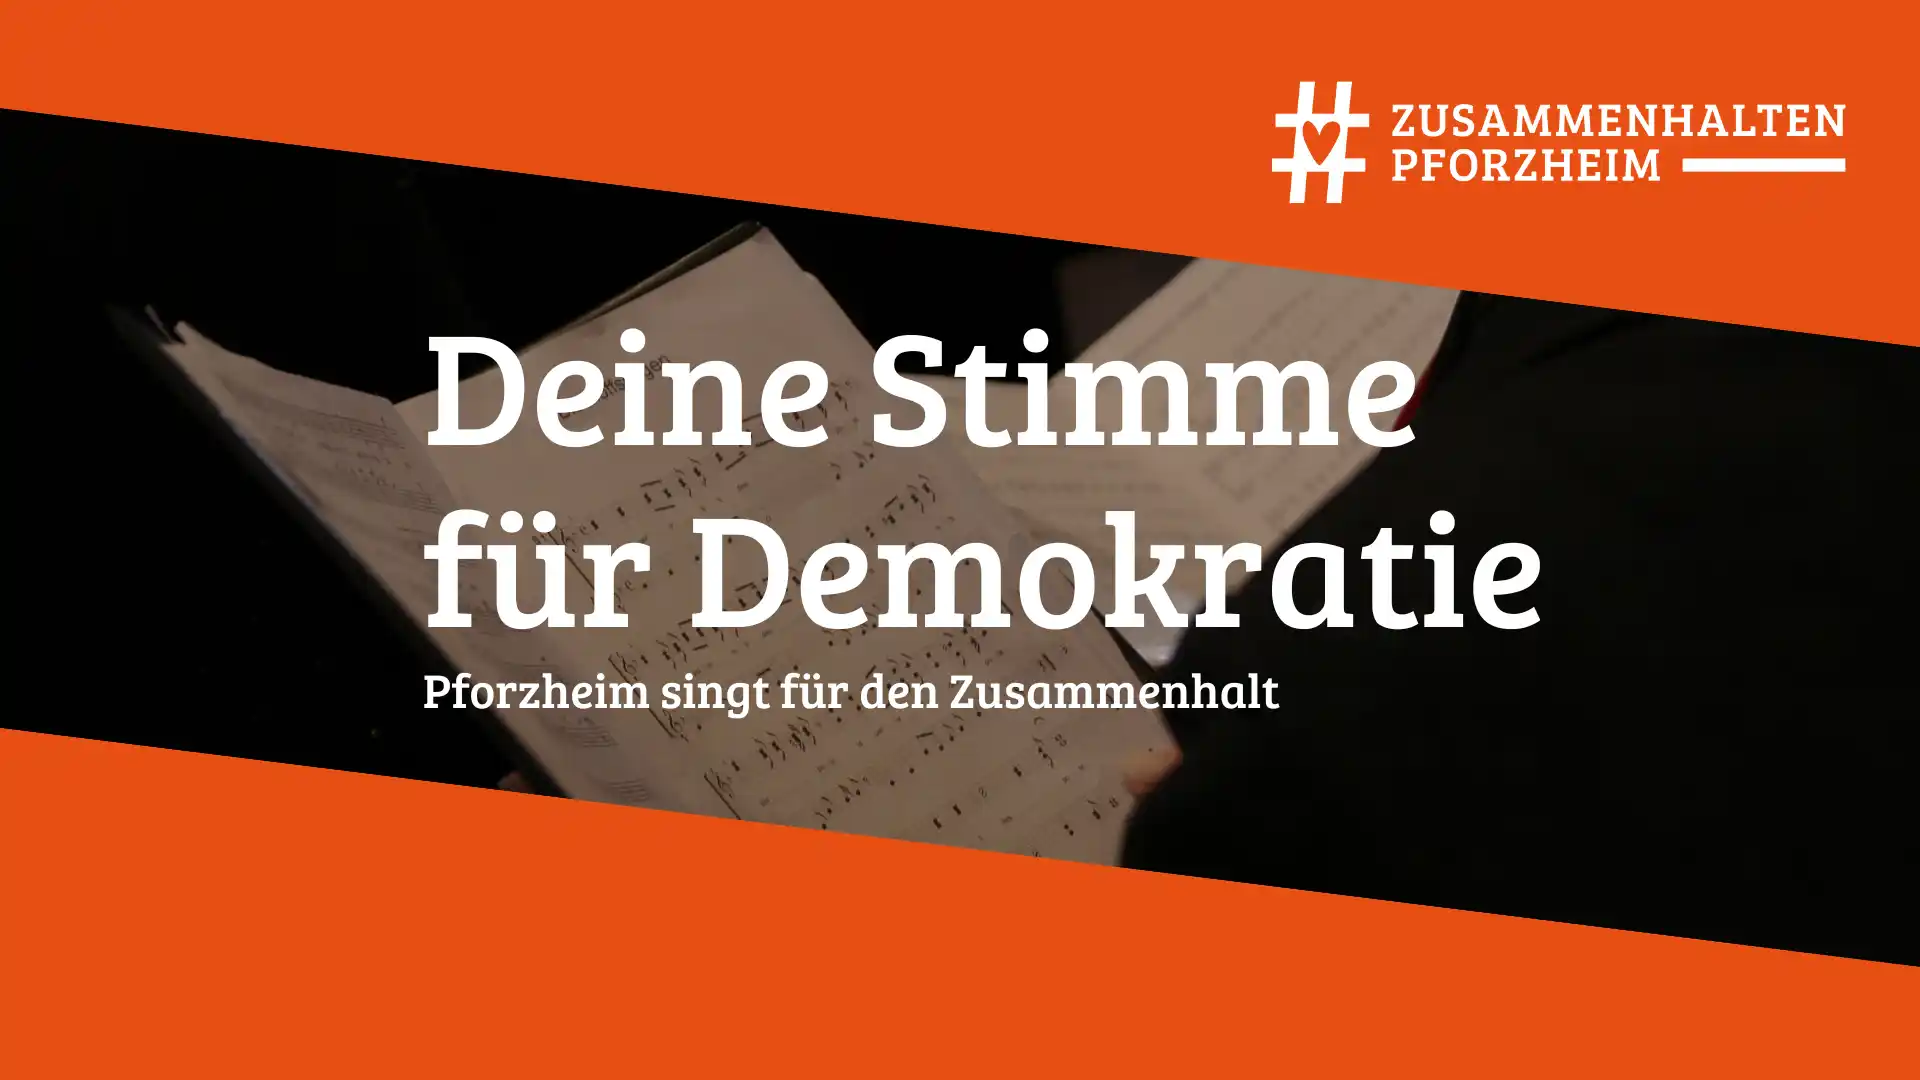 Bürgerbewegung #zusammenhalten Pforzheim lädt unter dem Motto “Deine Stimme für Demokratie” zum gemeinsamen Singen ein